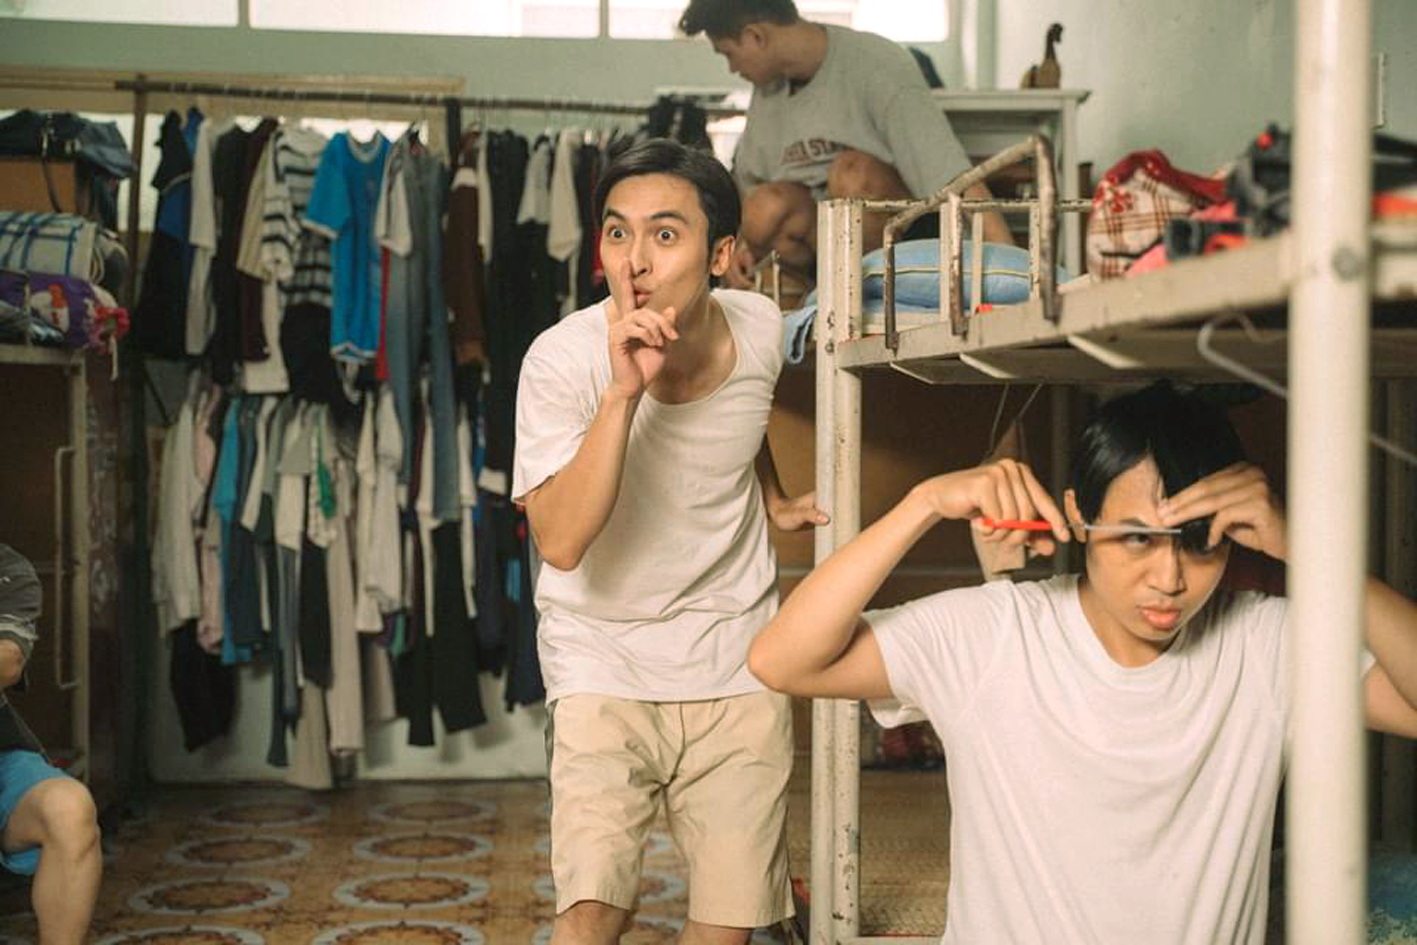 Phim Mùa hè đẹp nhất là tác phẩm hiếm hoi khai thác đề tài sinh viên của điện ảnh Việt kể từ thời điểm đại dịch đến nay